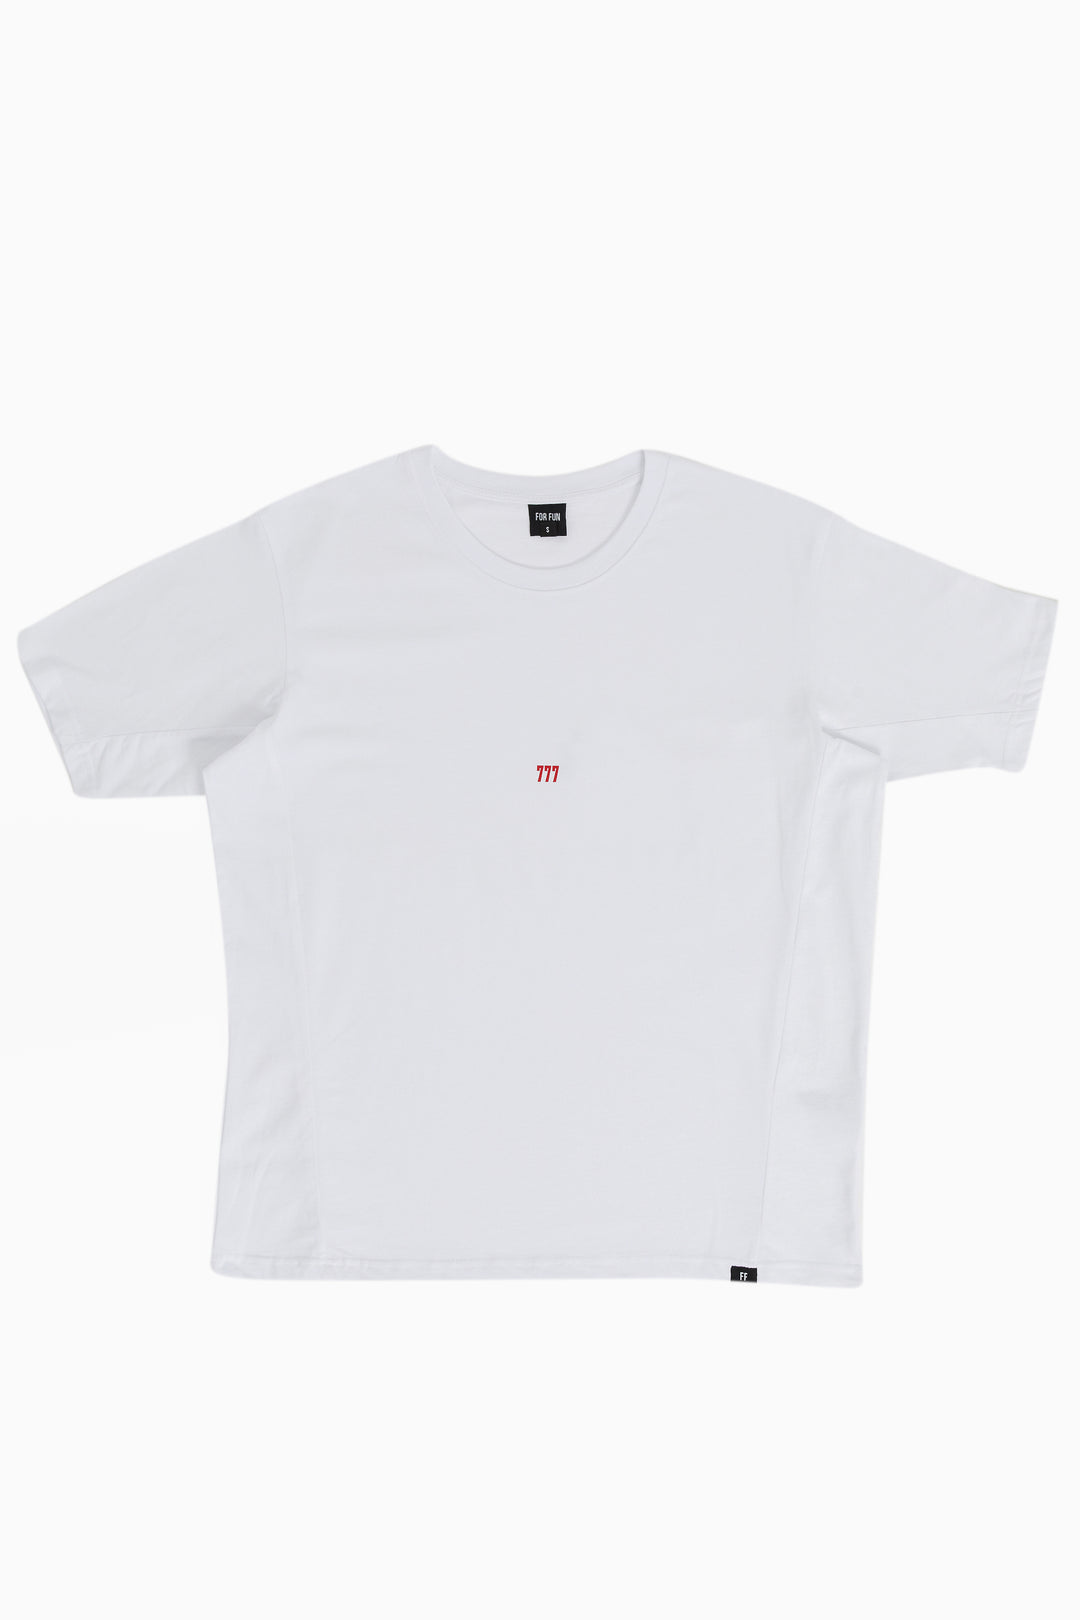 777 / Oversize T-shirt